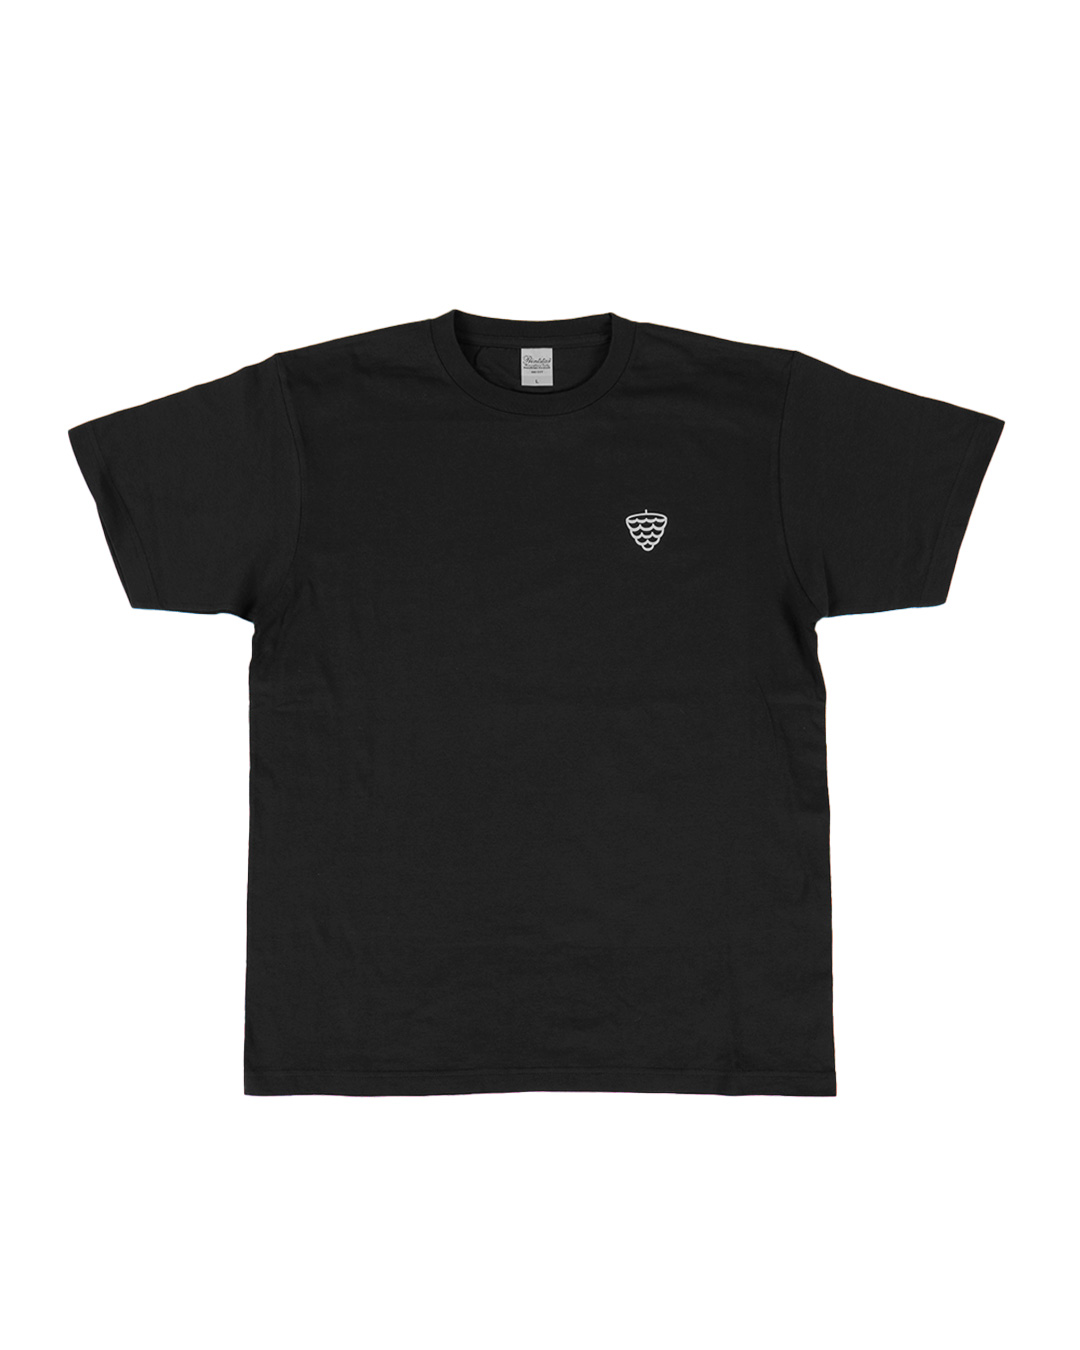 Pineconelab T-Shirts Black